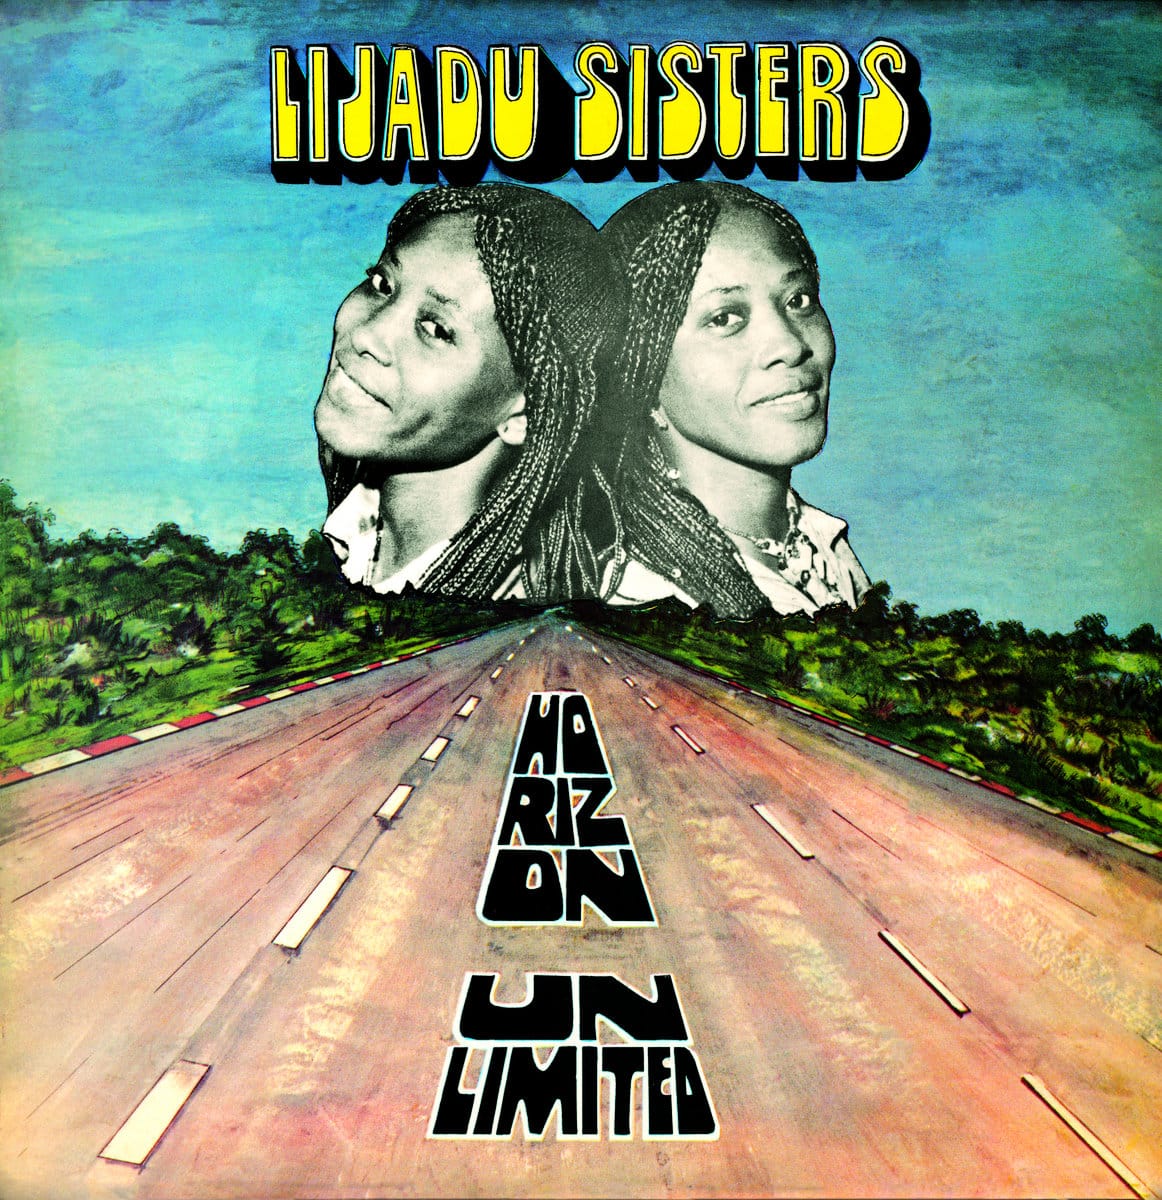 The Lijadu Sisters - Horizon Unlimited - NUMLP653 - NUMERO GROUP